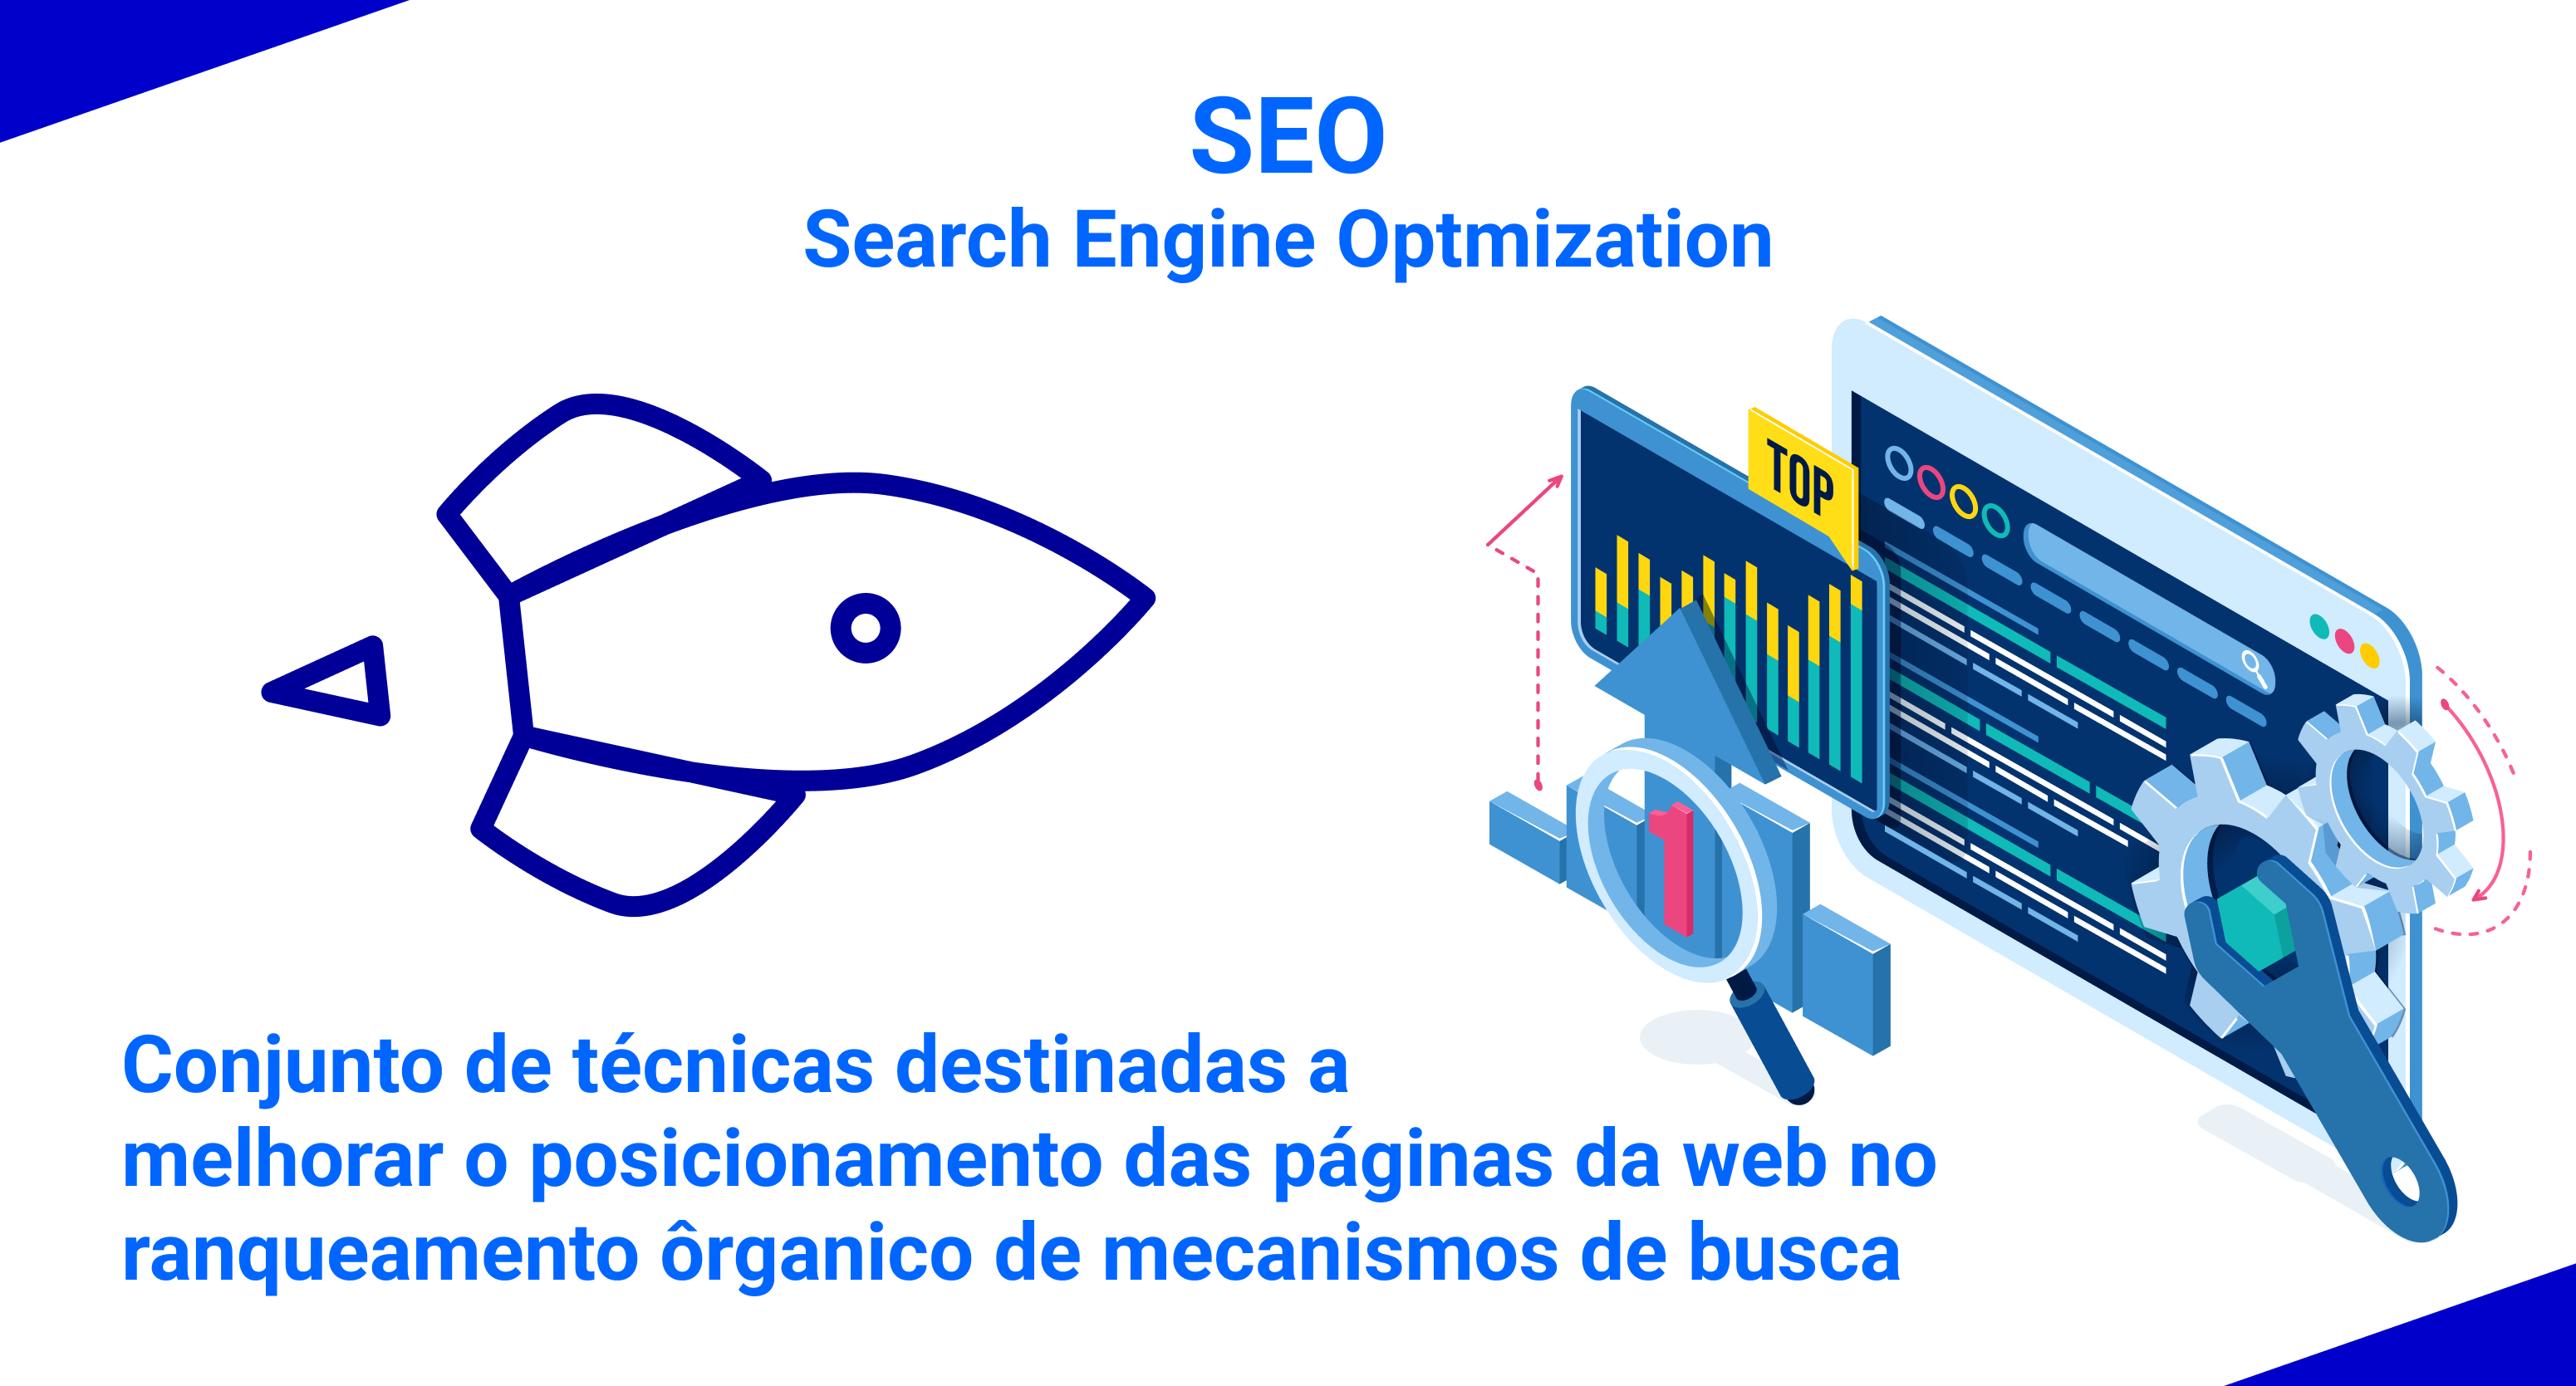 Confira o que é SEO, search engine optimization, e como funciona esta estratégia.